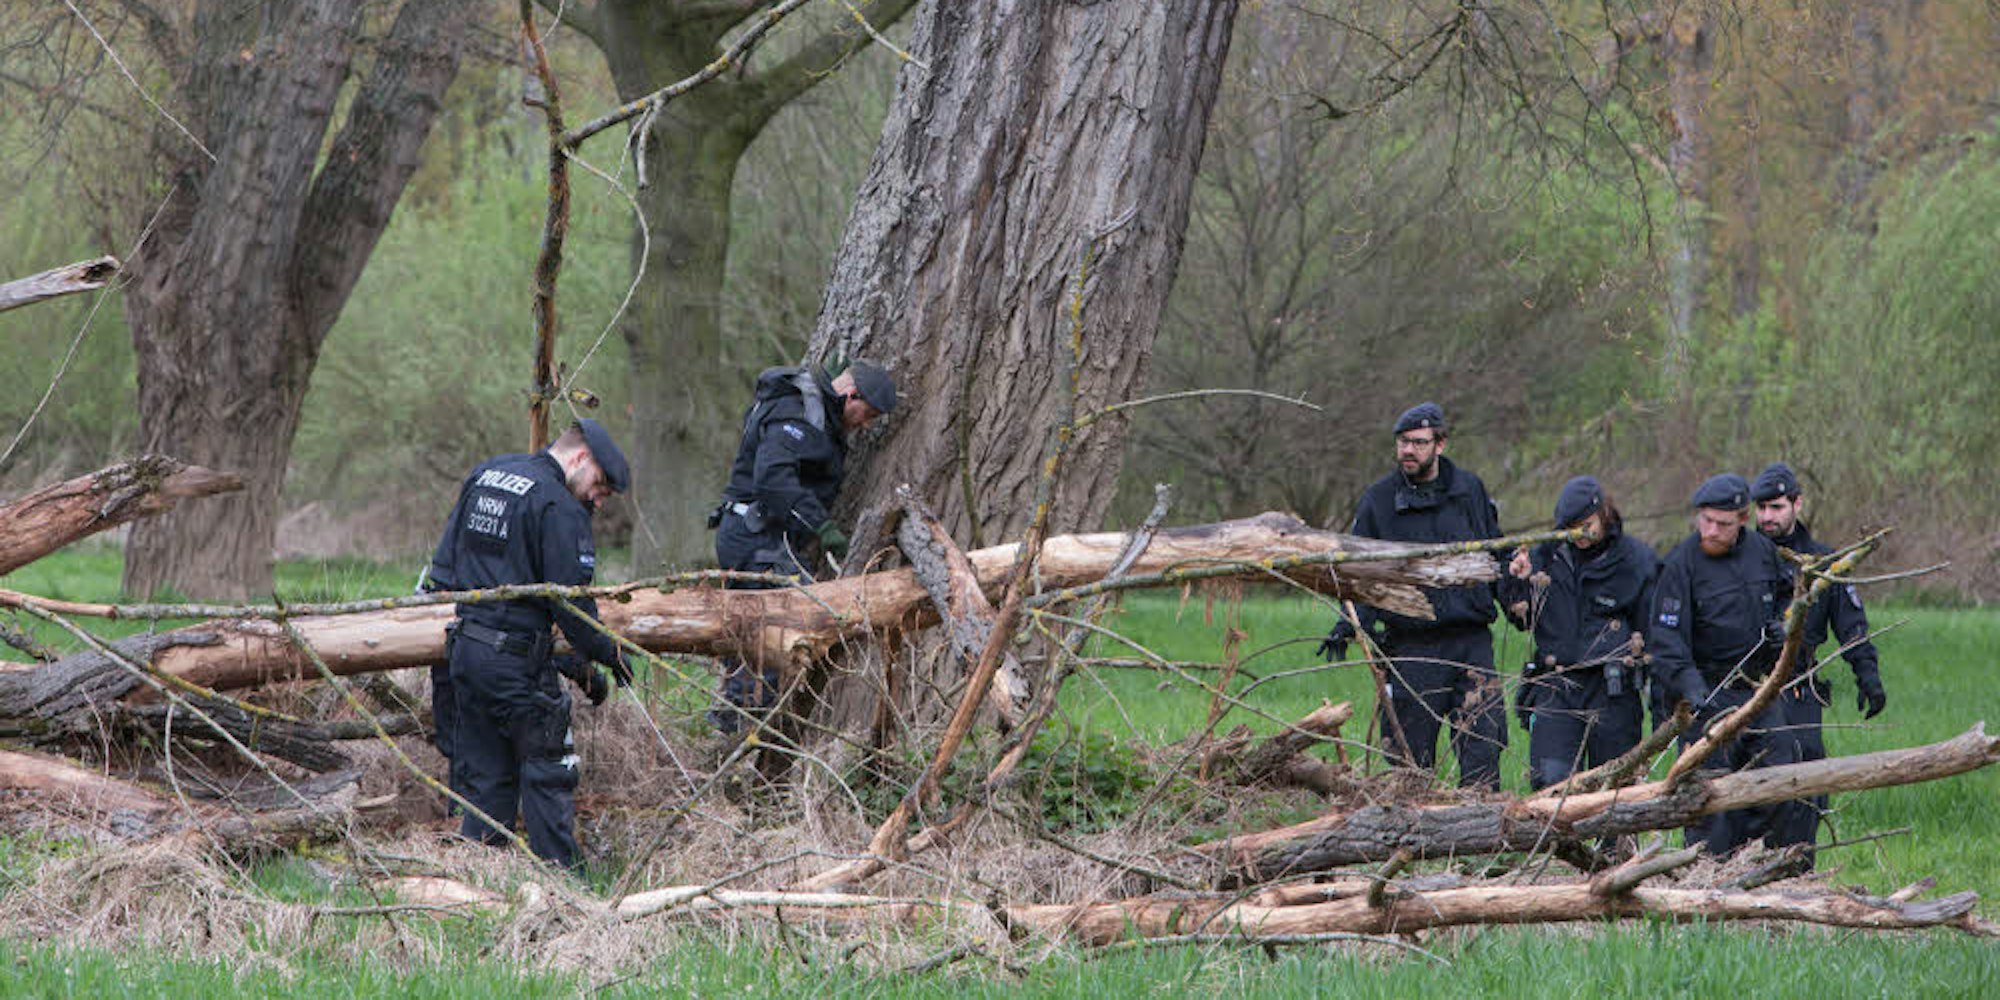 Rund 80 Bereitschaftspolizisten aus Köln und Bochum durchkämmten das Gebiet auf der Suche nach Spuren.